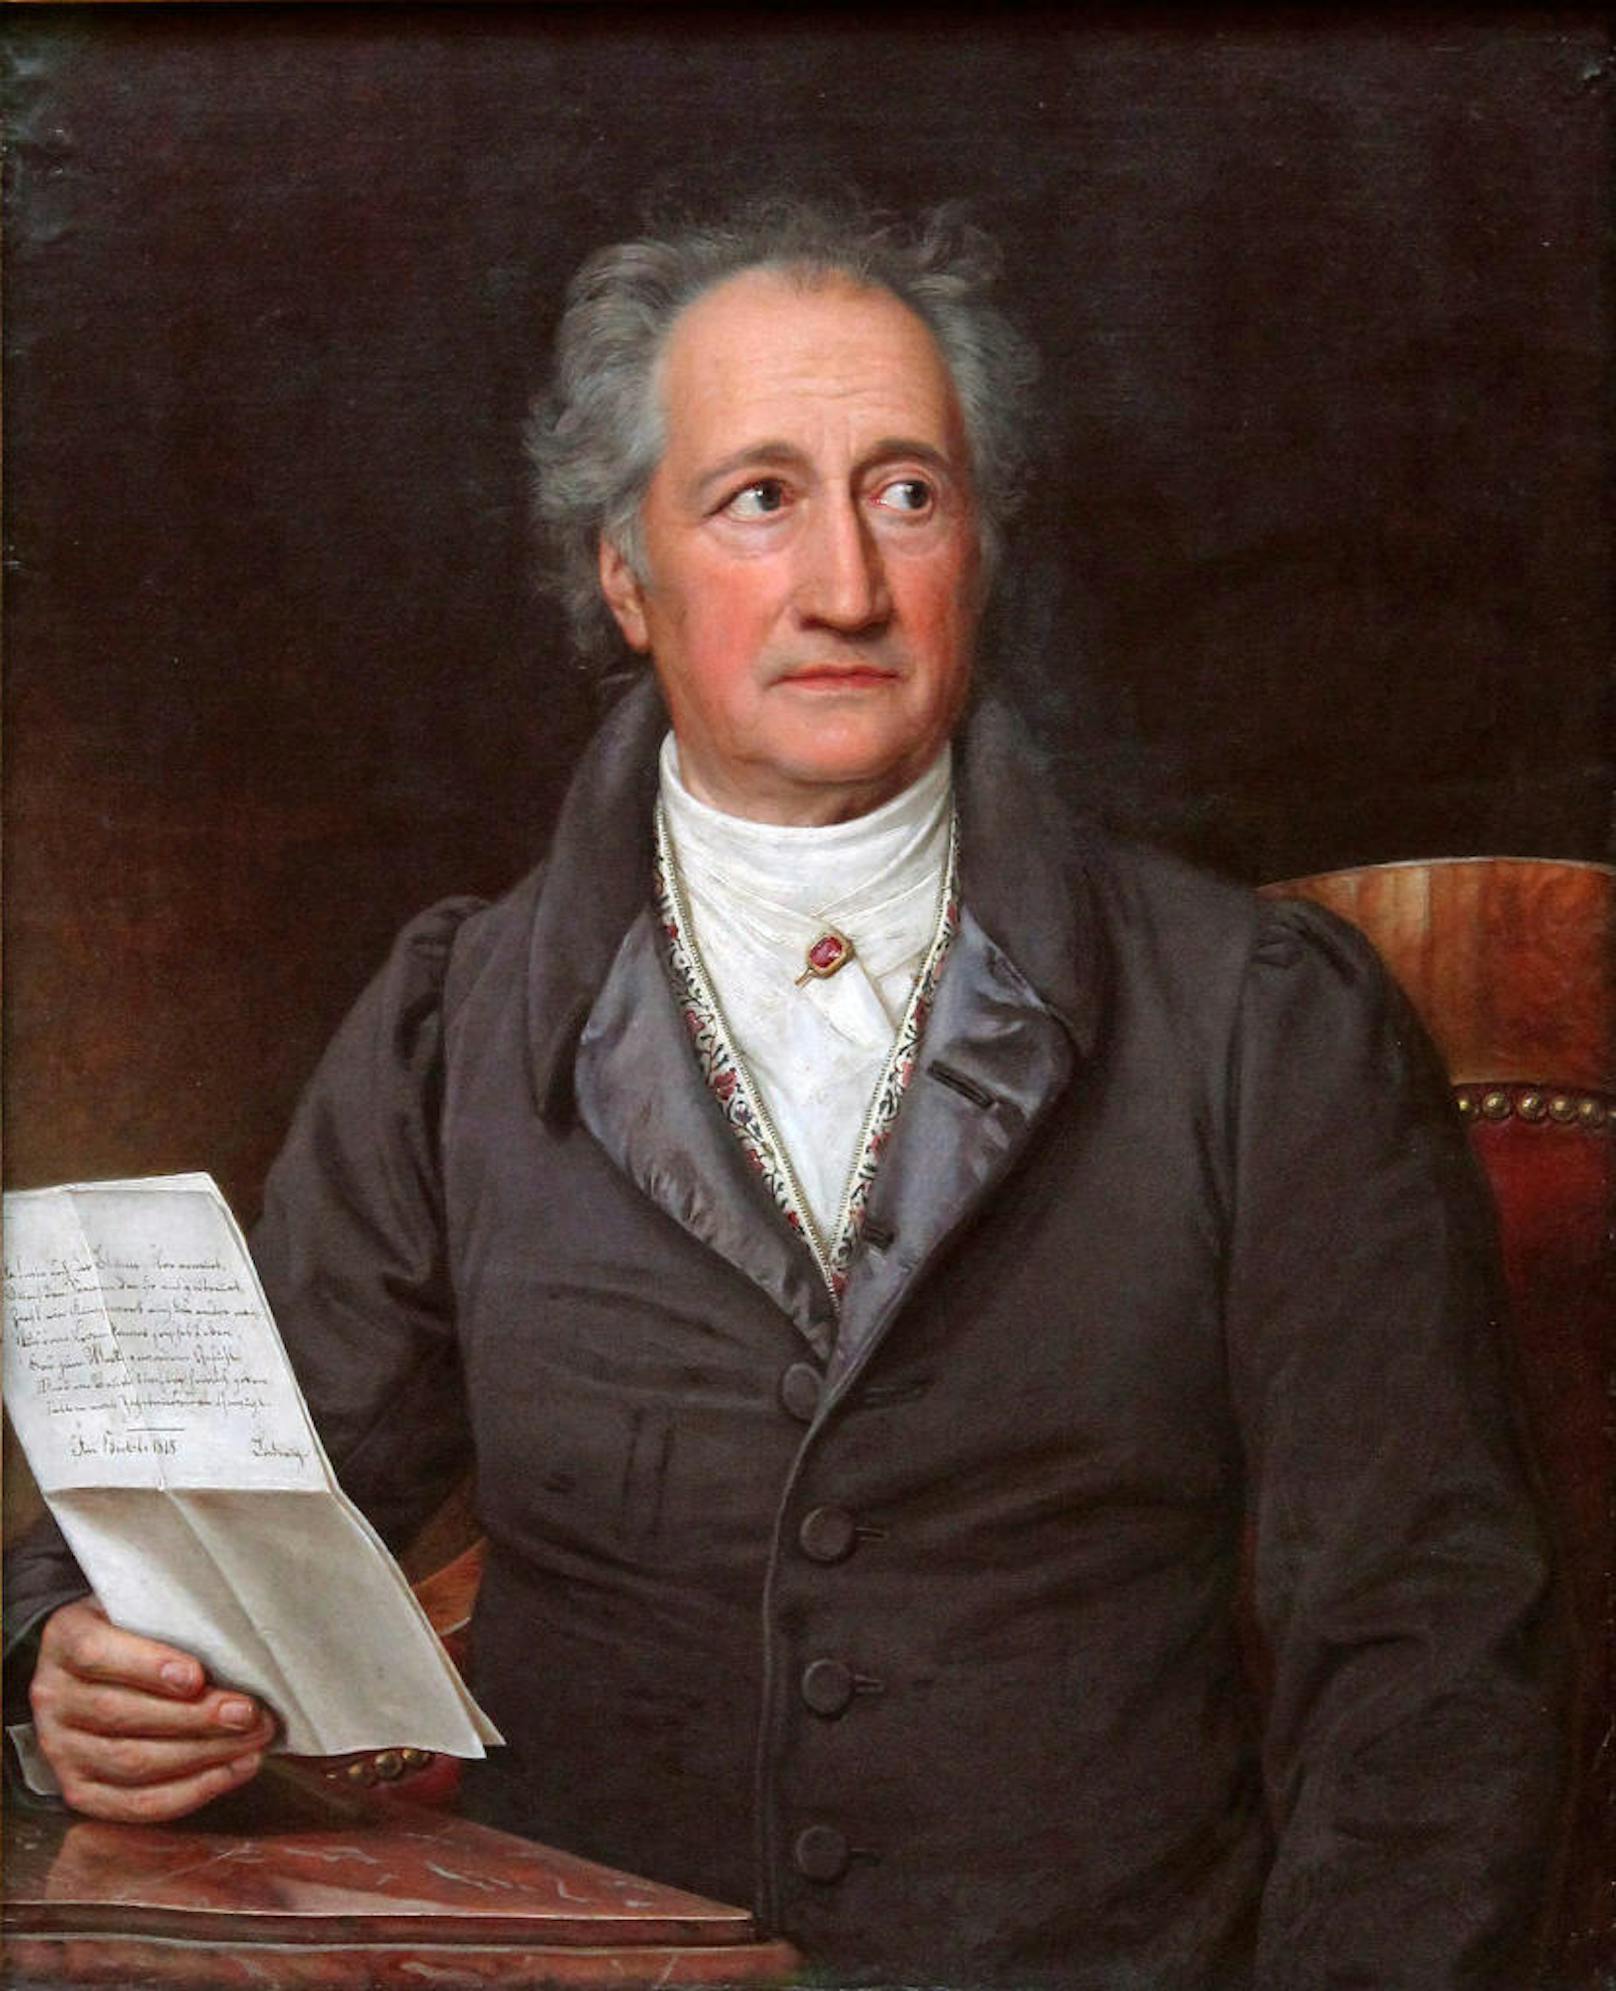 Johann Wolfgang von Goethe (1749-1832)

Denkste. Der "Mehr Licht!"-Sager schon Goethe schon von seinen Zeitgenossen zugeschrieben. Viel wahrscheinlicher ist jedoch, dass die Aussage von Goethes Diener stimmt, der behauptet, sein Herr habe seinen Namen gesagt. "Er verlangte zuletzt den Botschamper, und den nahm er noch selbst und hielt denselben so fest an sich, bis er verschied."

Goethe starb also mit dem Nachttopf in der Hand. Wahrscheinlich. Denn mit 100%iger Gewissheit kann man das heute nicht mehr beweisen.